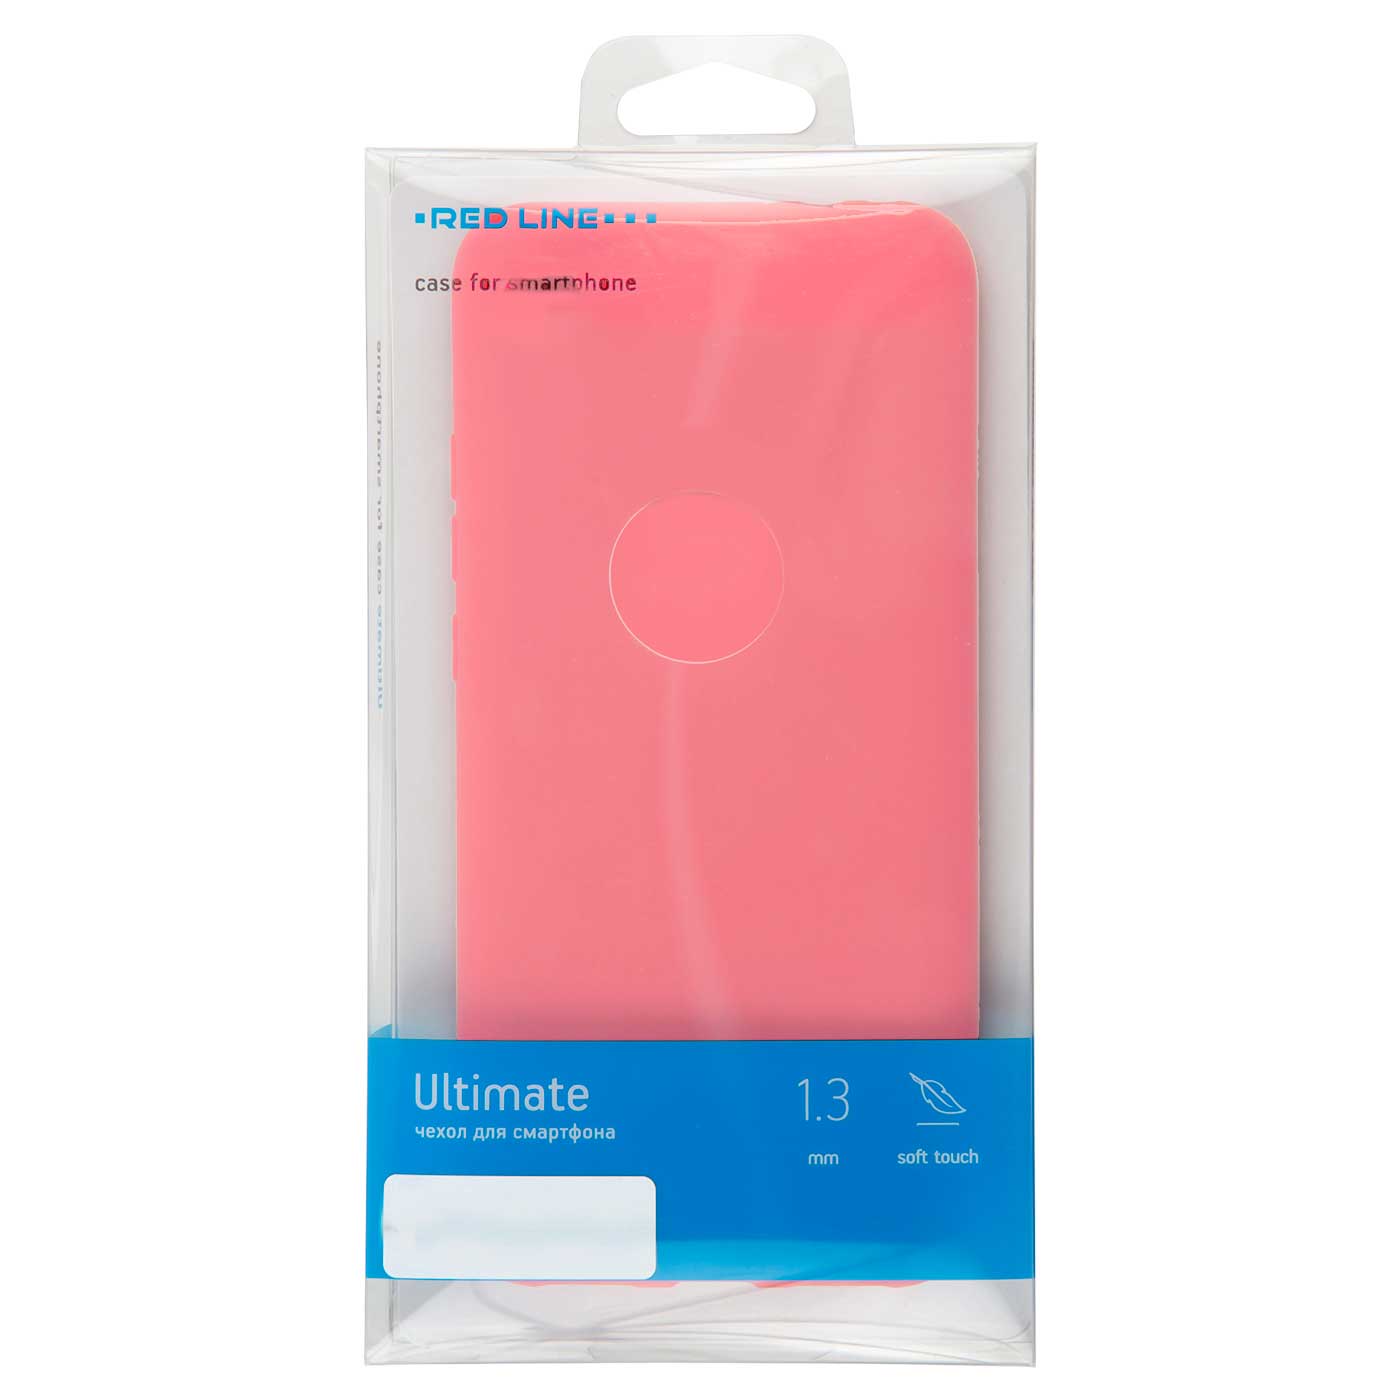 Чехол защитный Red Line Ultimate для iPhone 12 mini (5.4), розовый УТ000022222 чехол защитный red line ultimate для iphone 12 mini 5 4 зеленый ут000022218